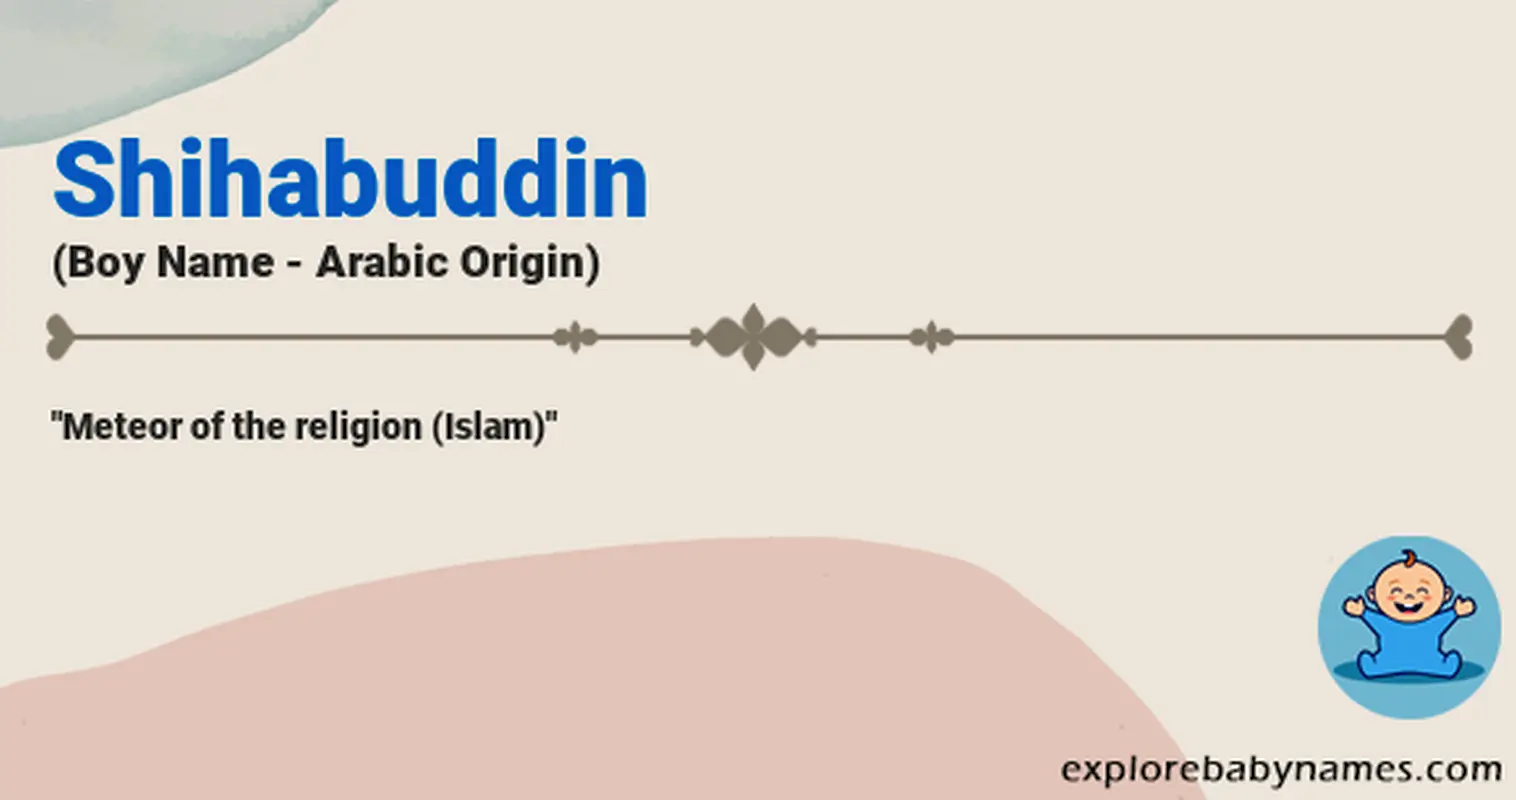 Meaning of Shihabuddin